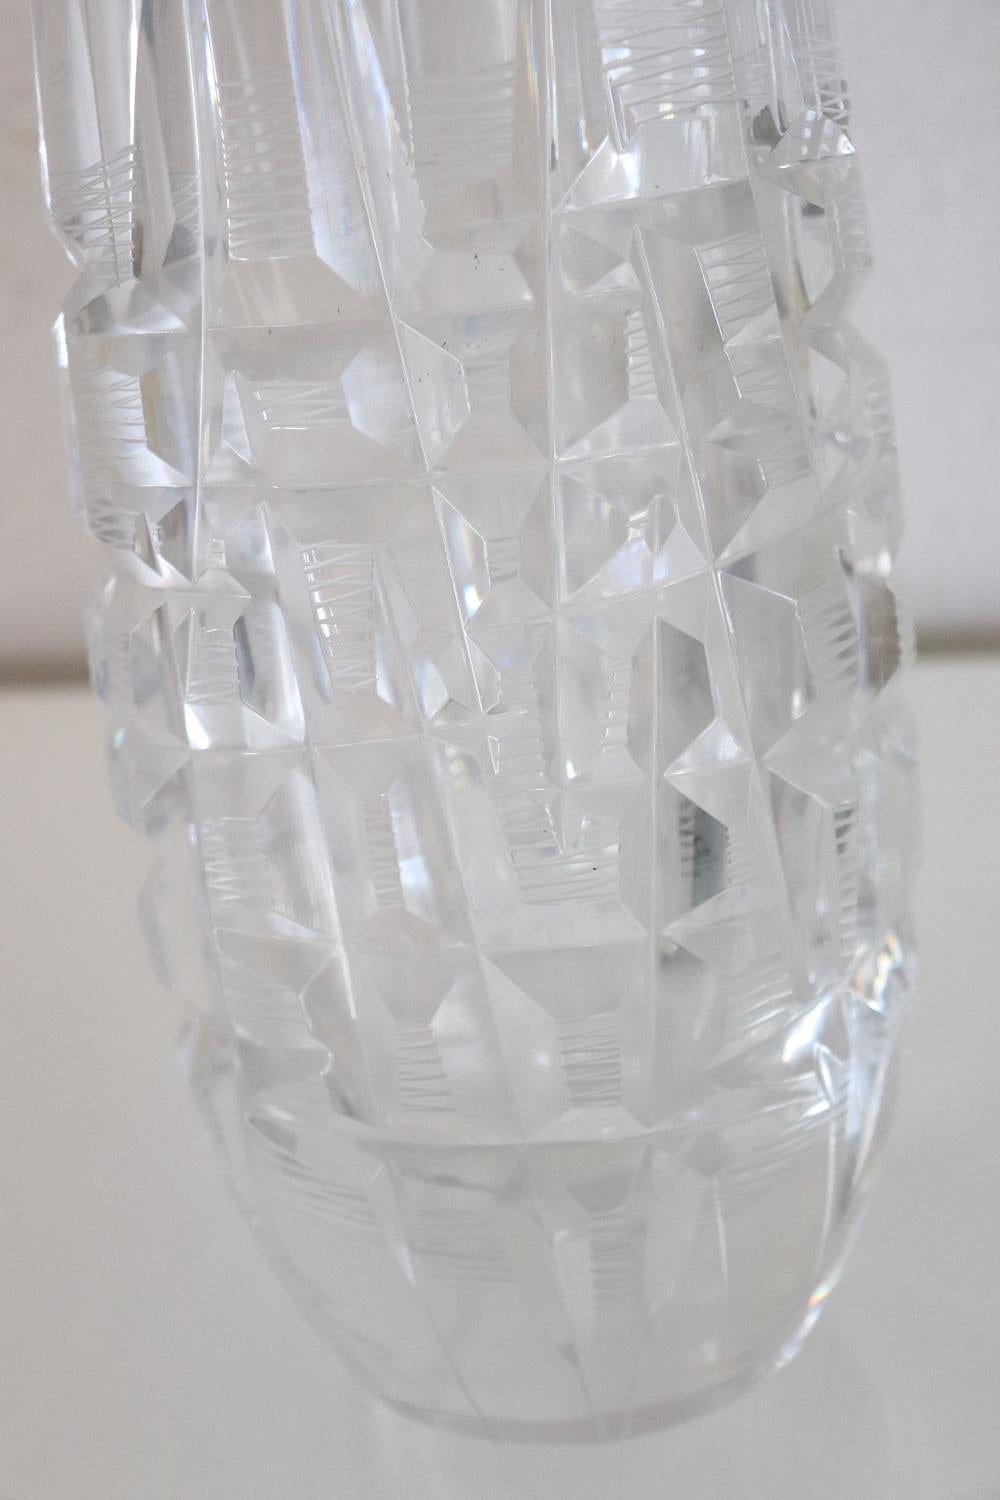 20th Century Italian Design Art Glass Vase, 1970s For Sale 1